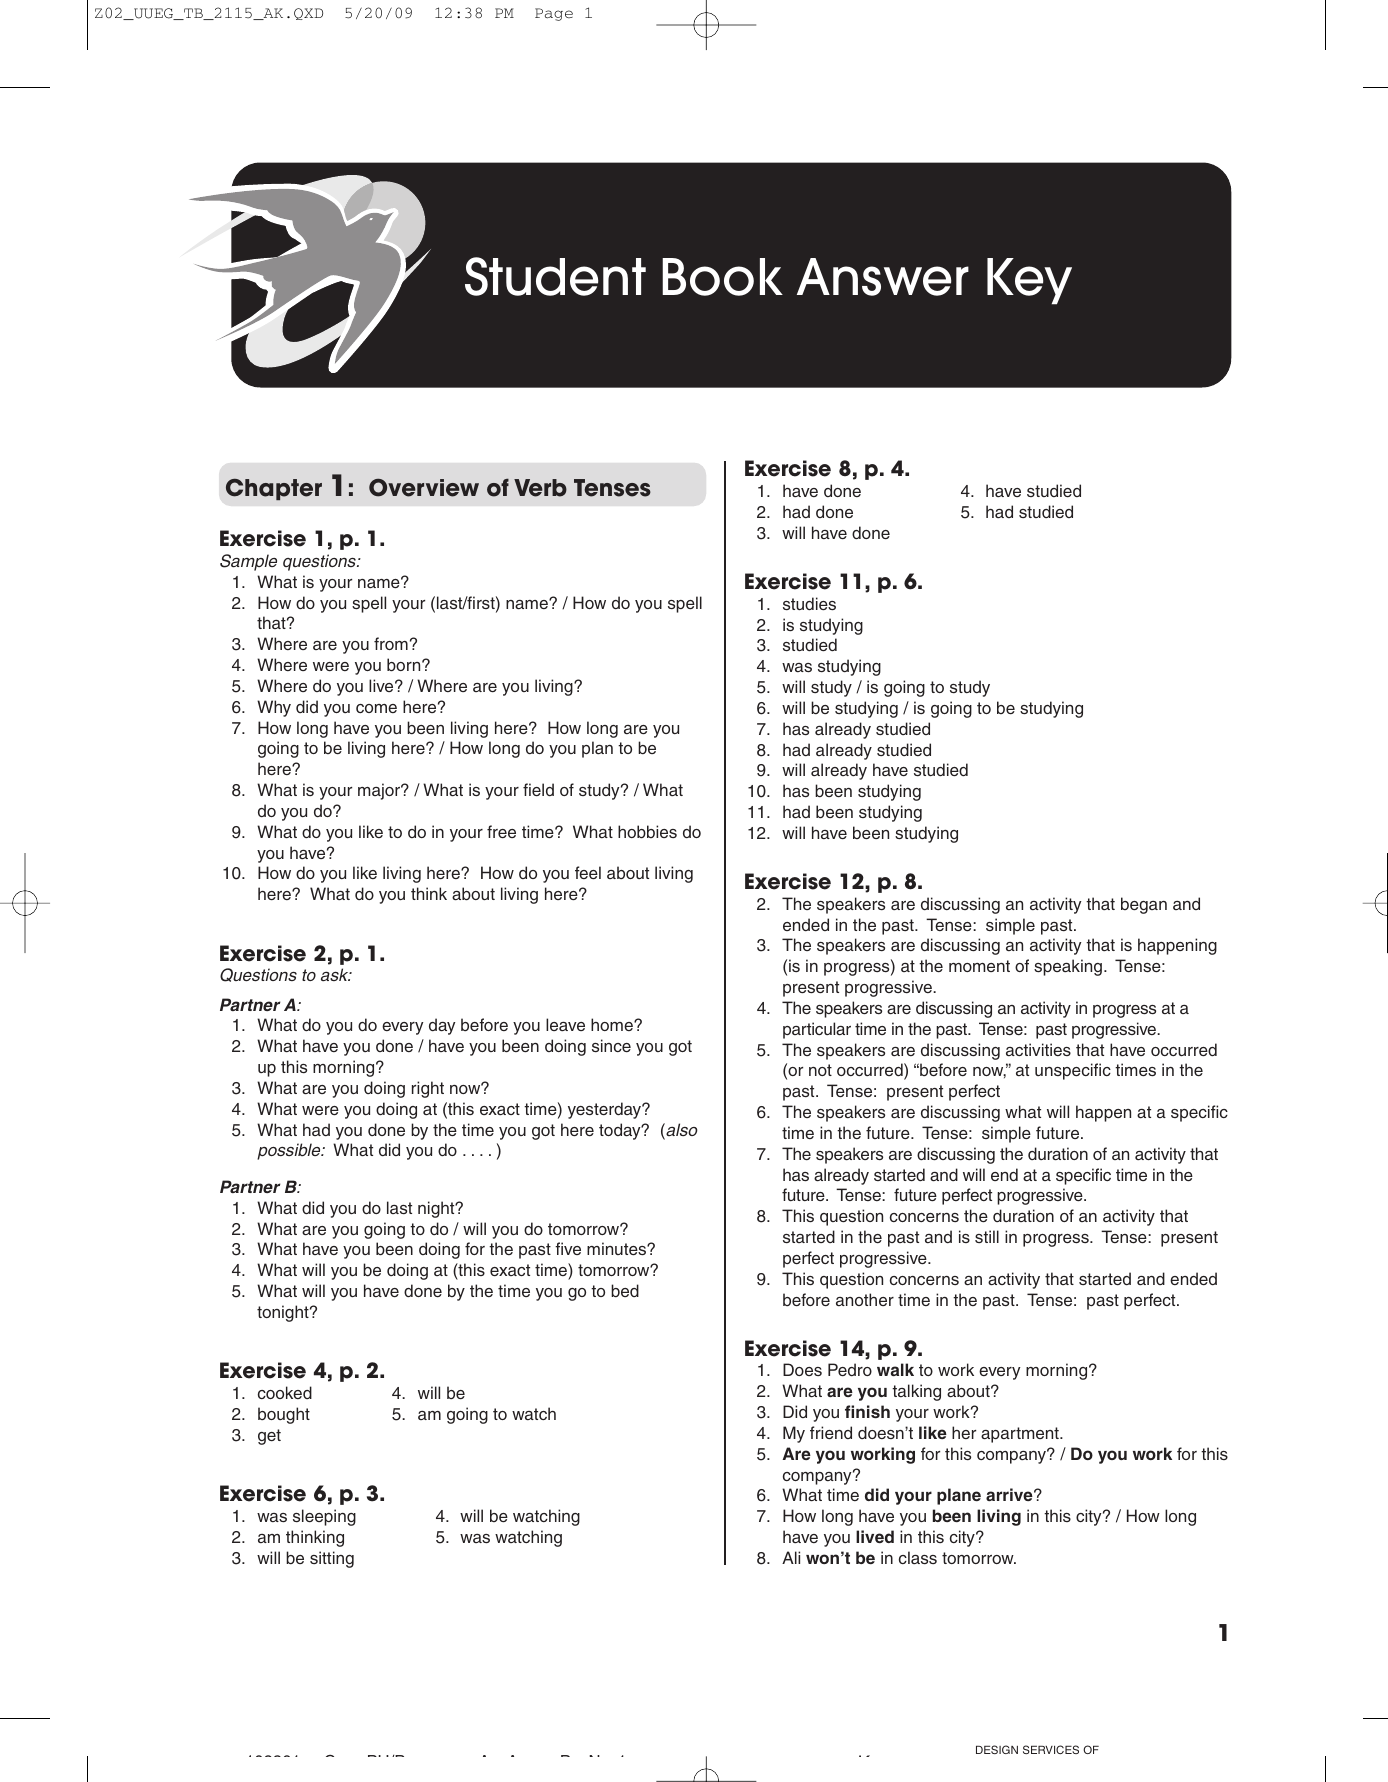 Учебник student s book ответы. Answer Key. Focus 2 второе издание Workbook Keys. Ответы Prime time 1 student's book revision 3 answer Key. Focus 4 Workbook Keys 4.3.